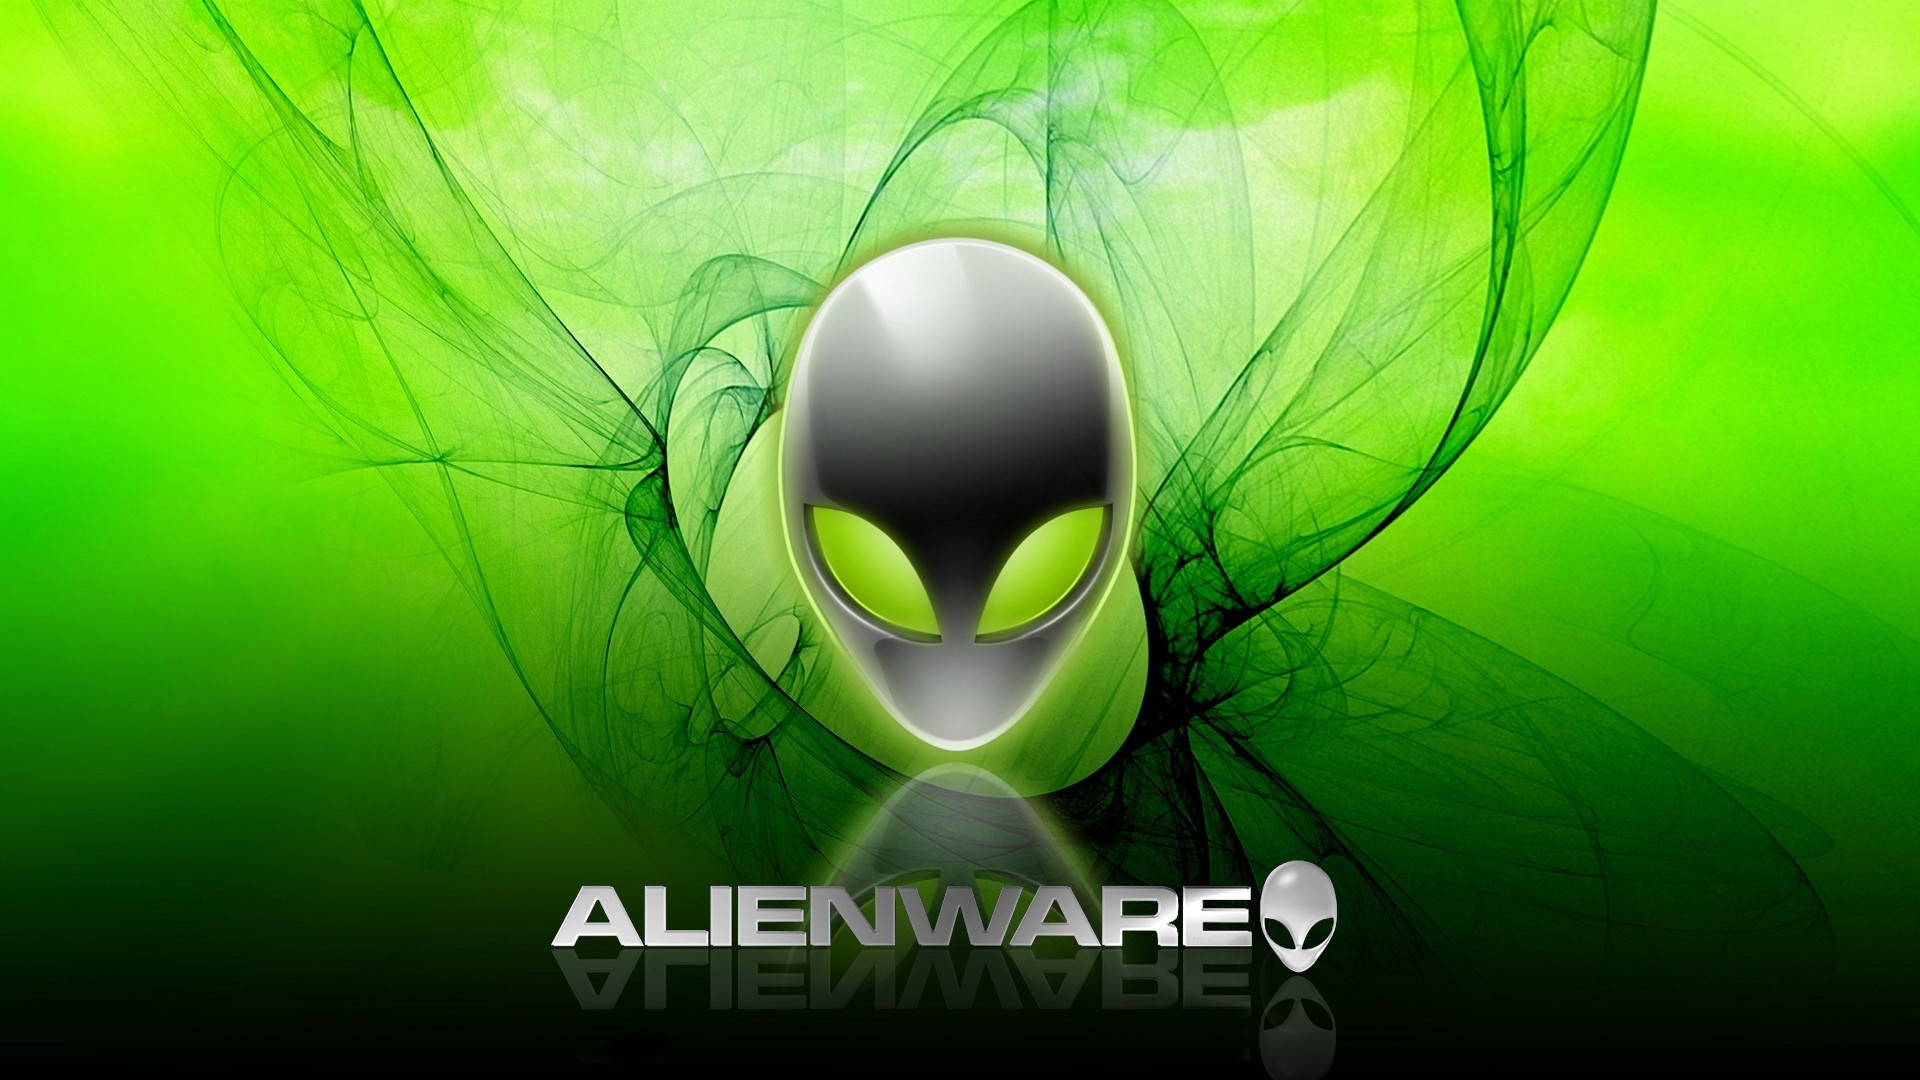 1920x1080 Alienware-hd-wallpapers-download